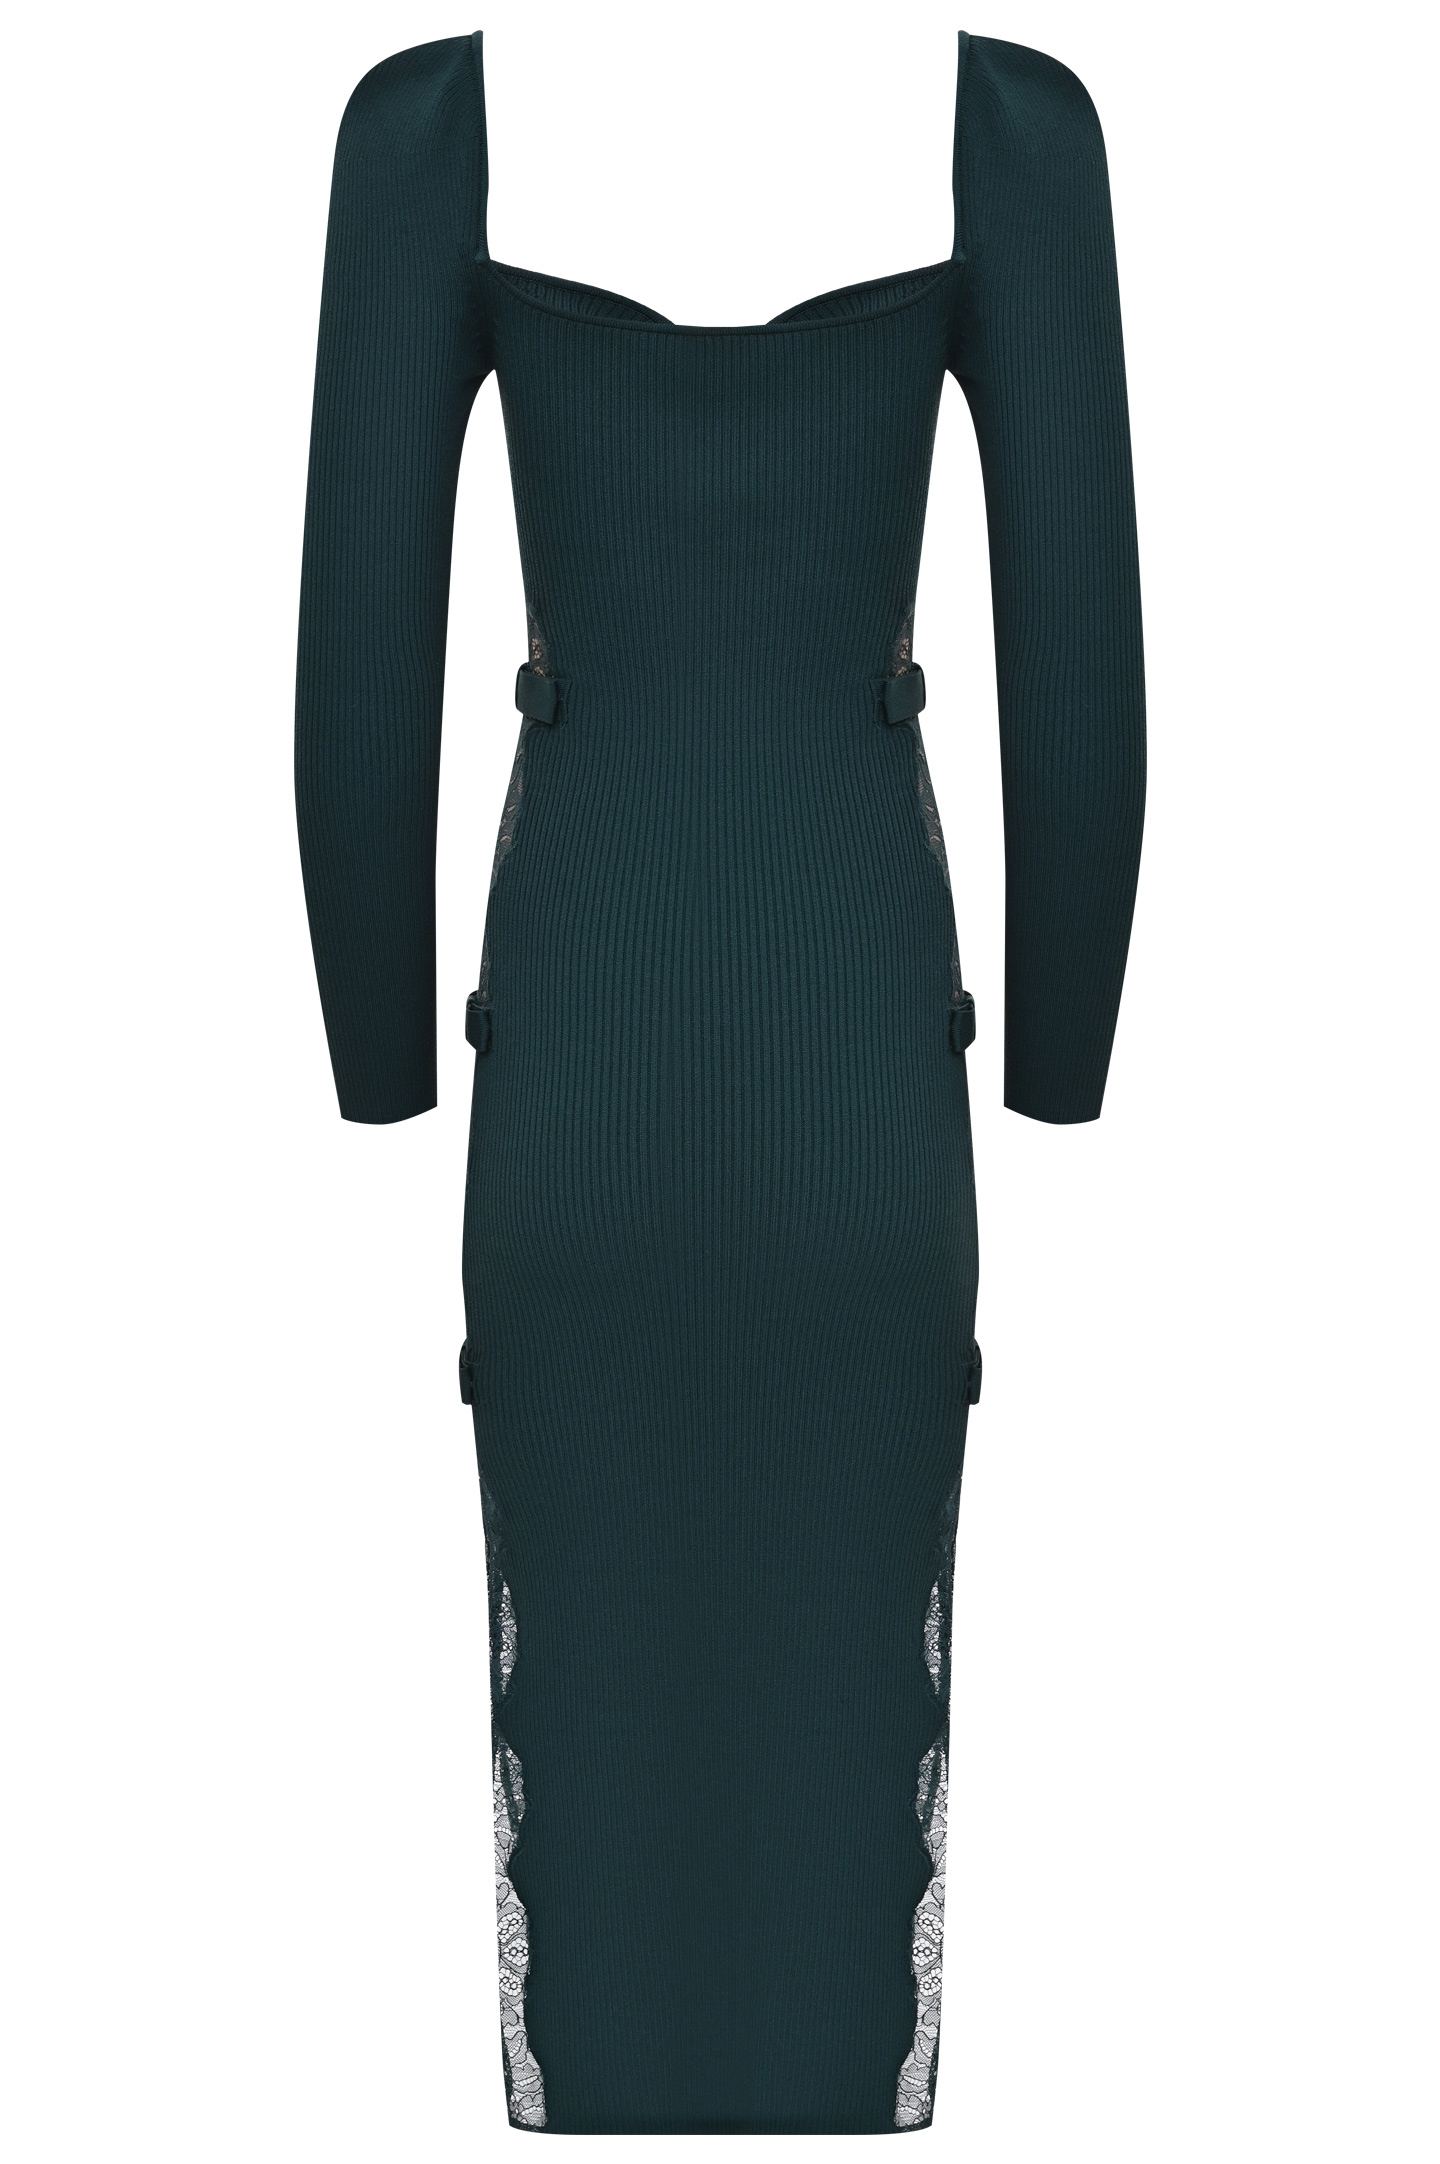 Платье SELF PORTRAIT AW21-110A, цвет: Зеленый, Женский